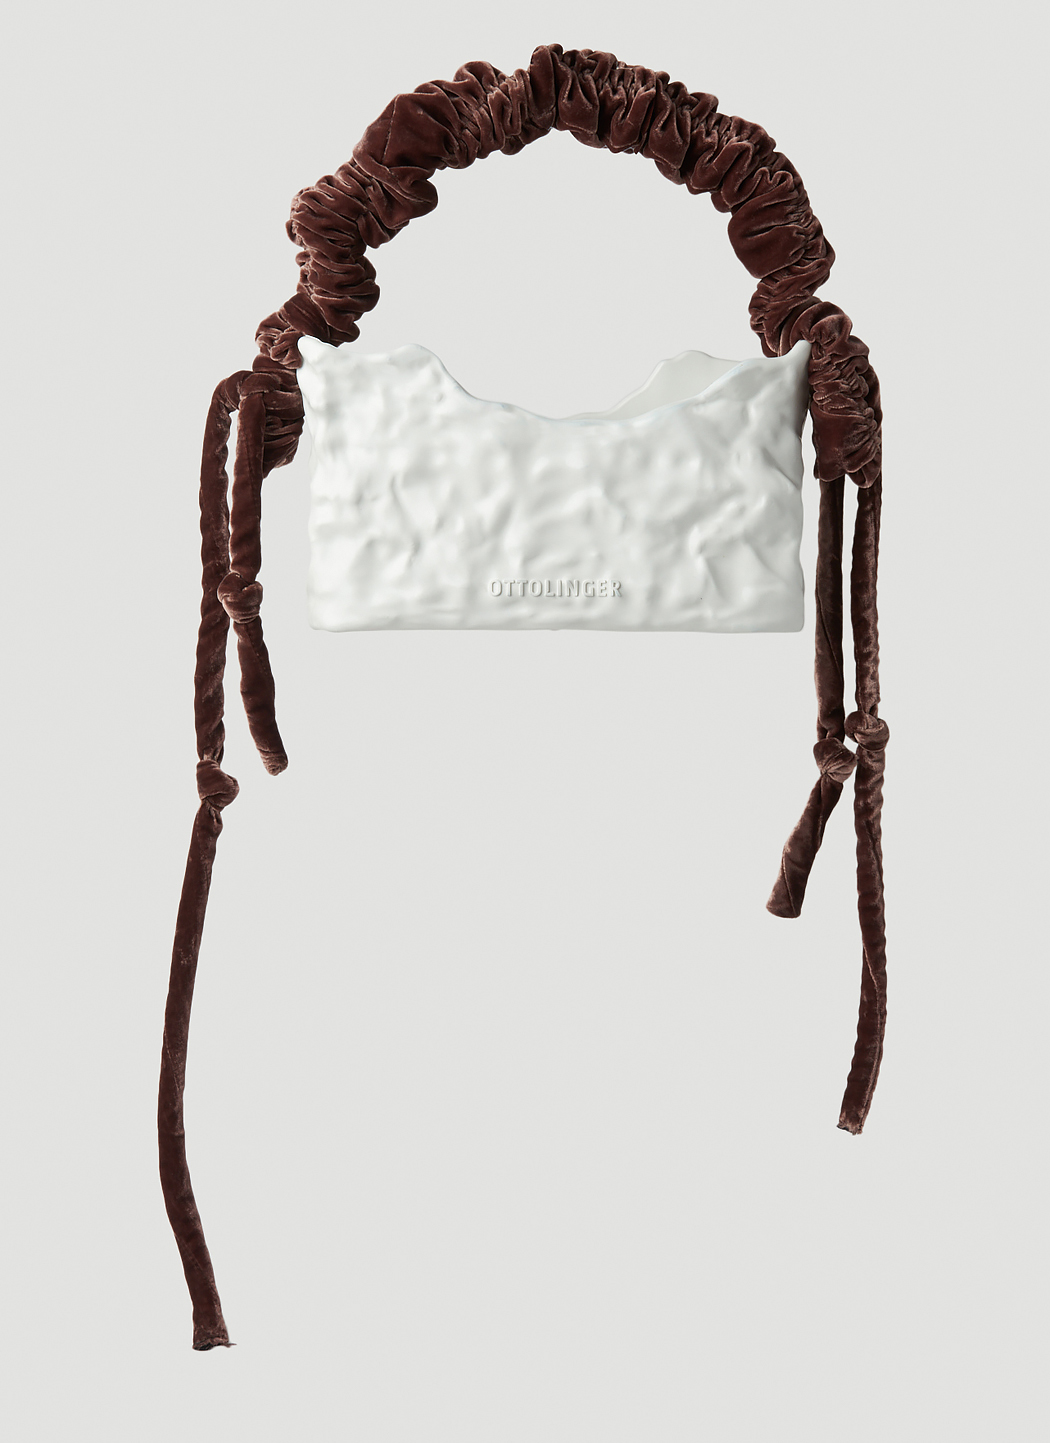 Ottolinger Pink Signature Ceramic Chain Bag | Smart Closet